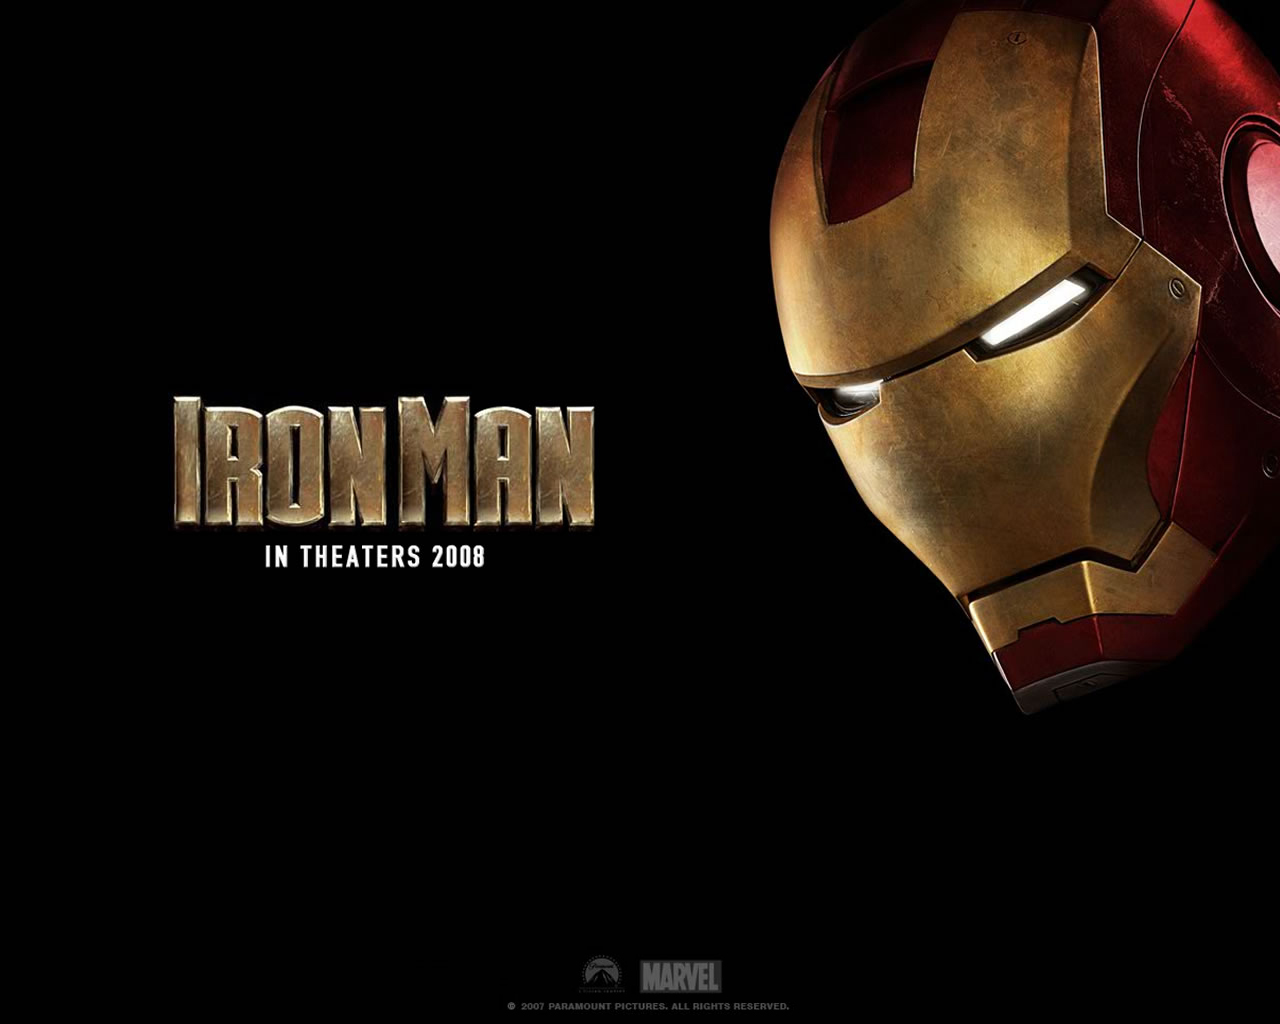 tony stark, movie, iron man lock screen backgrounds